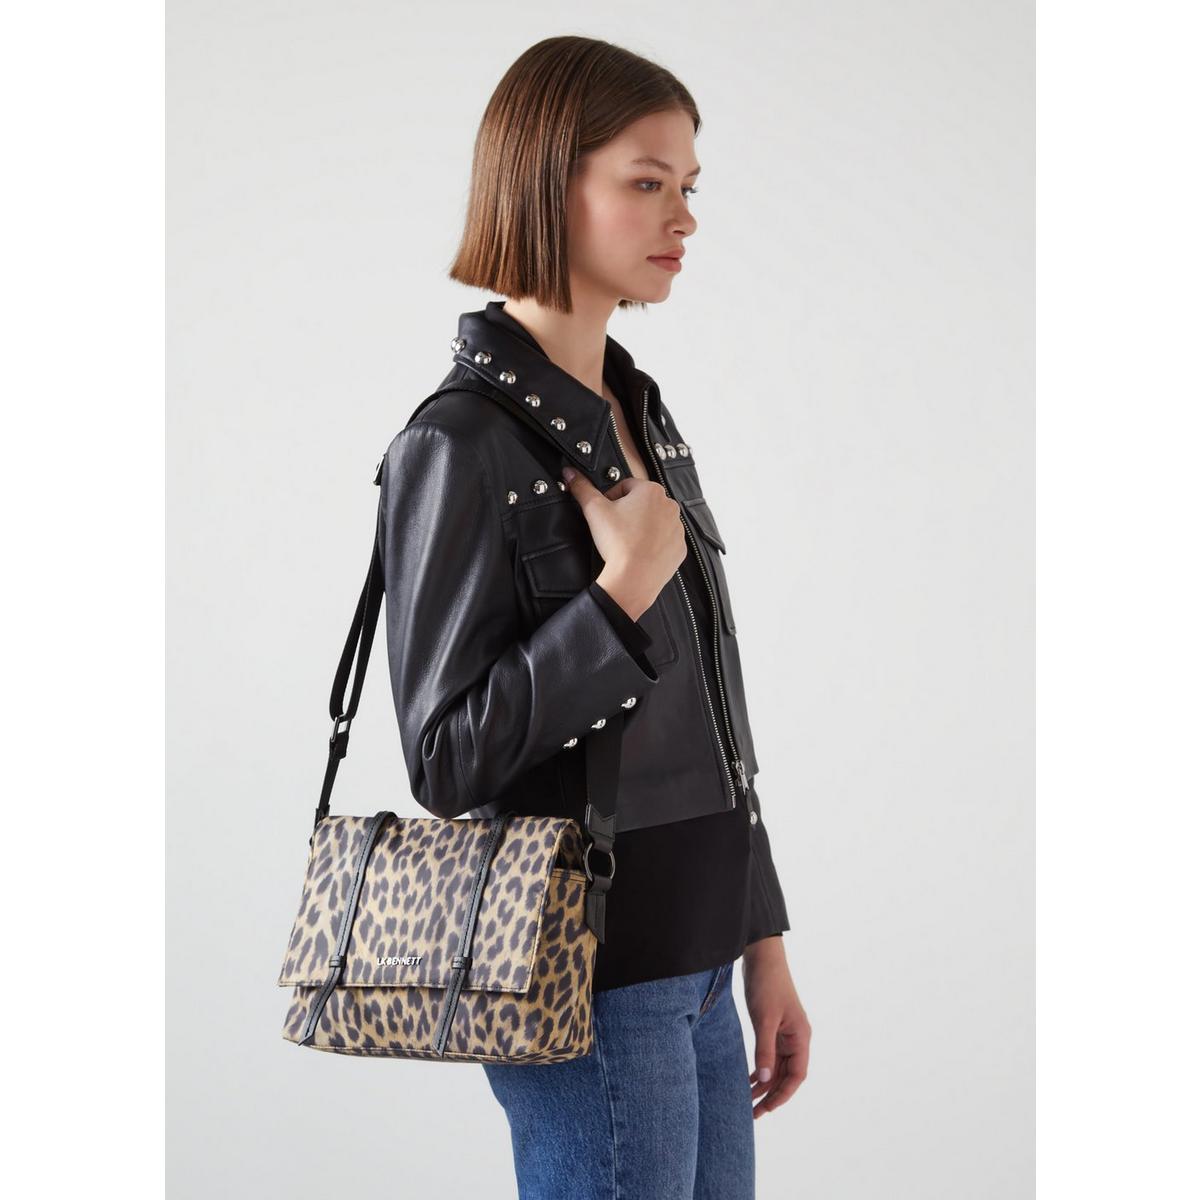 Jeanne Leopard-Print Shoulder Bag, N°21